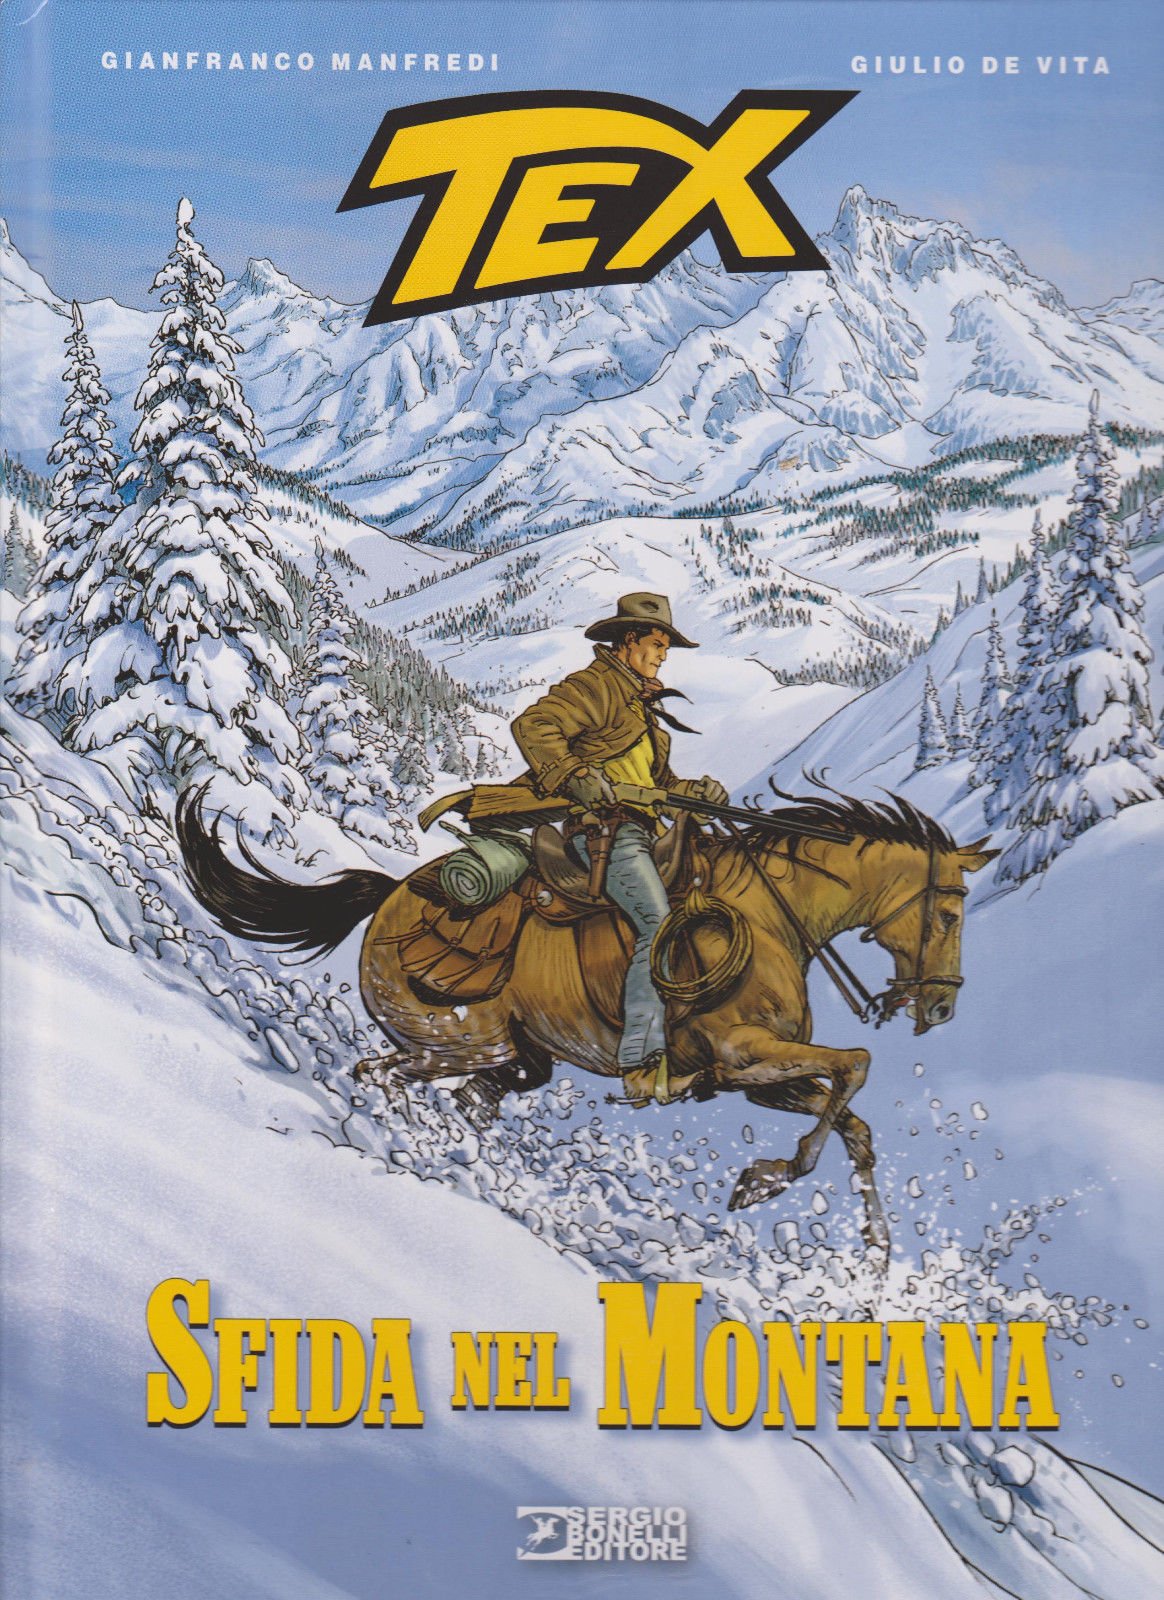 Tex, i migliori volumi cartonati dell'eroe Bonelli su eBay